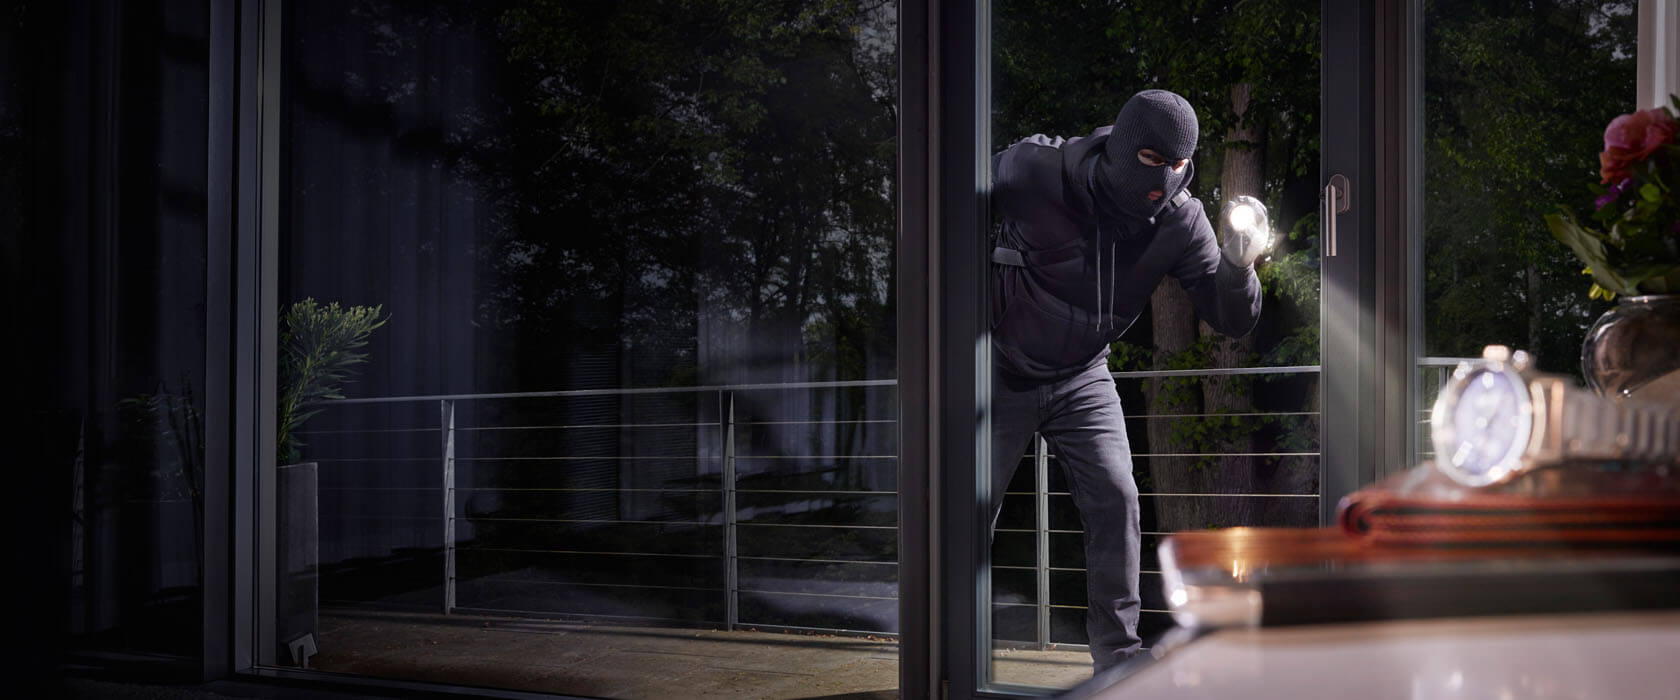 Symbolbild Einbrecher mit Maske und Taschenlampe